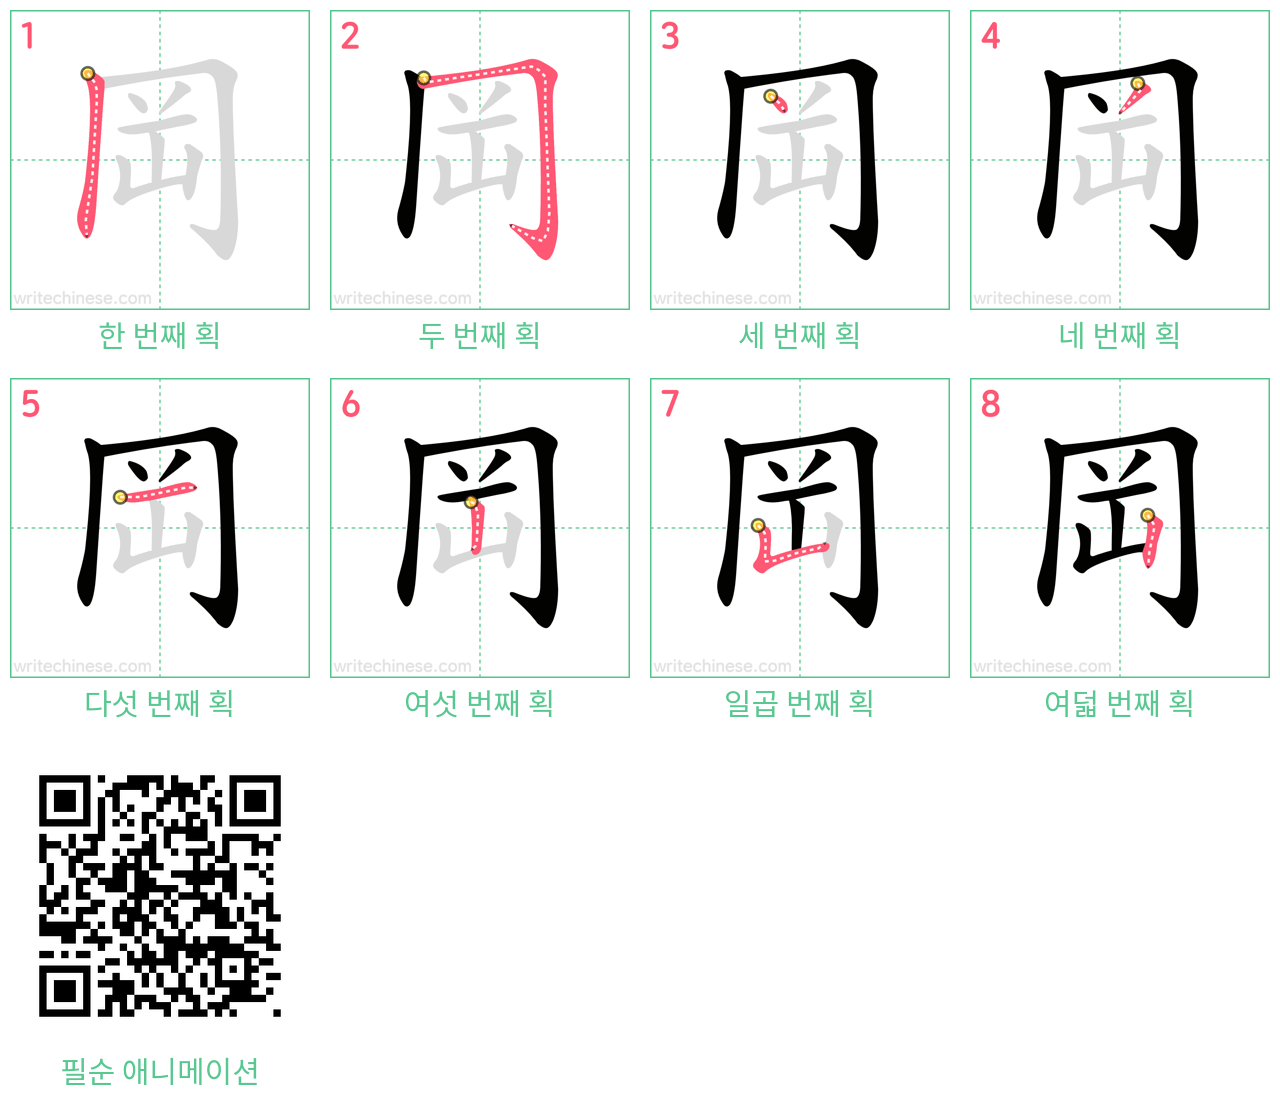 岡 step-by-step stroke order diagrams